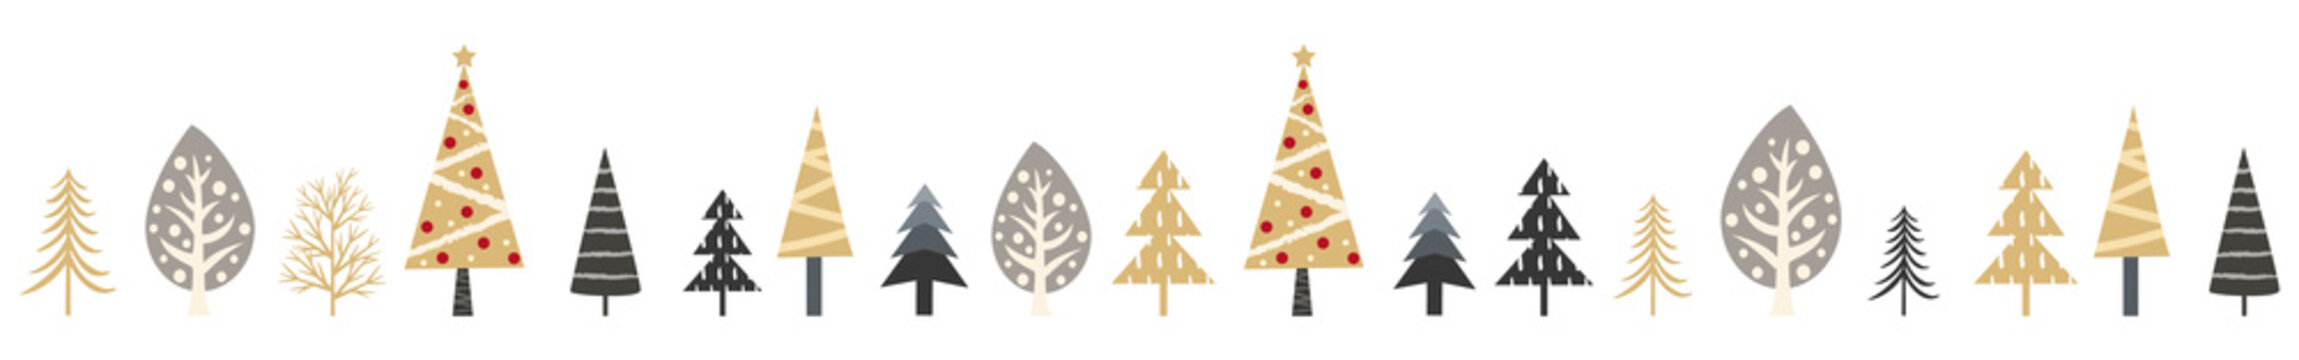 おしゃれなクリスマスツリーと木の罫線のベクターイラスト(背景,X'mas)